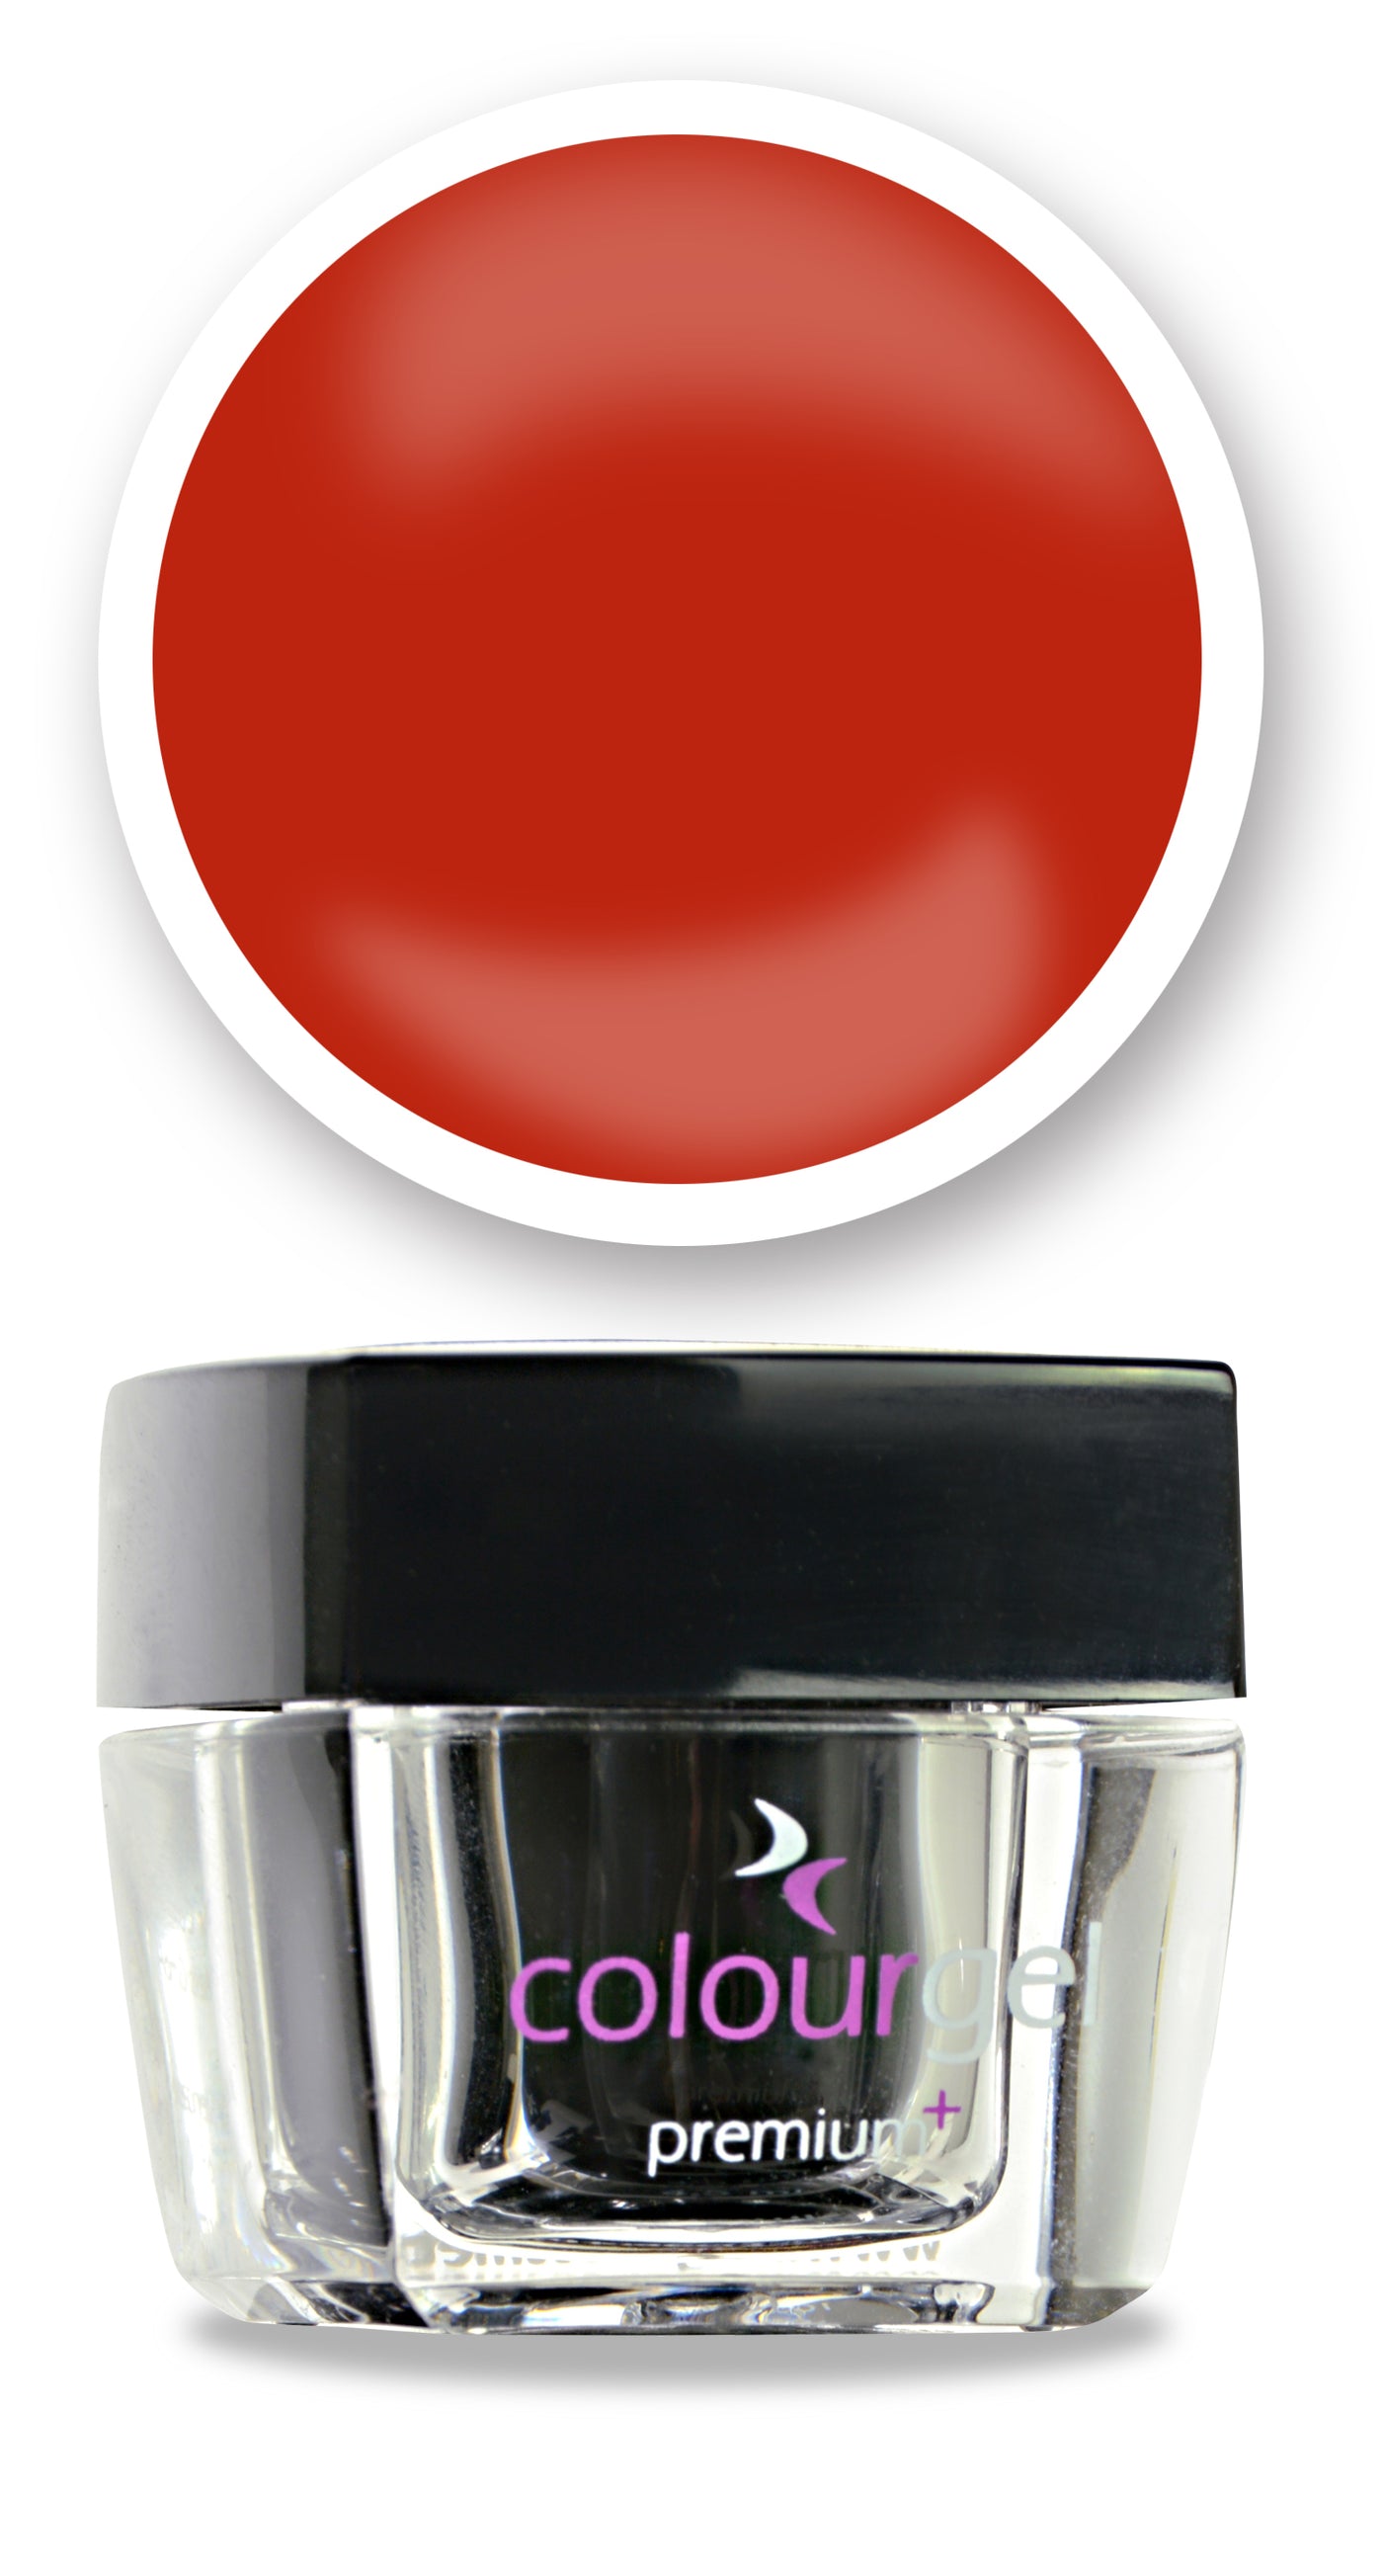 Colourgel Premium+ 4.5ml 020 Classic Red